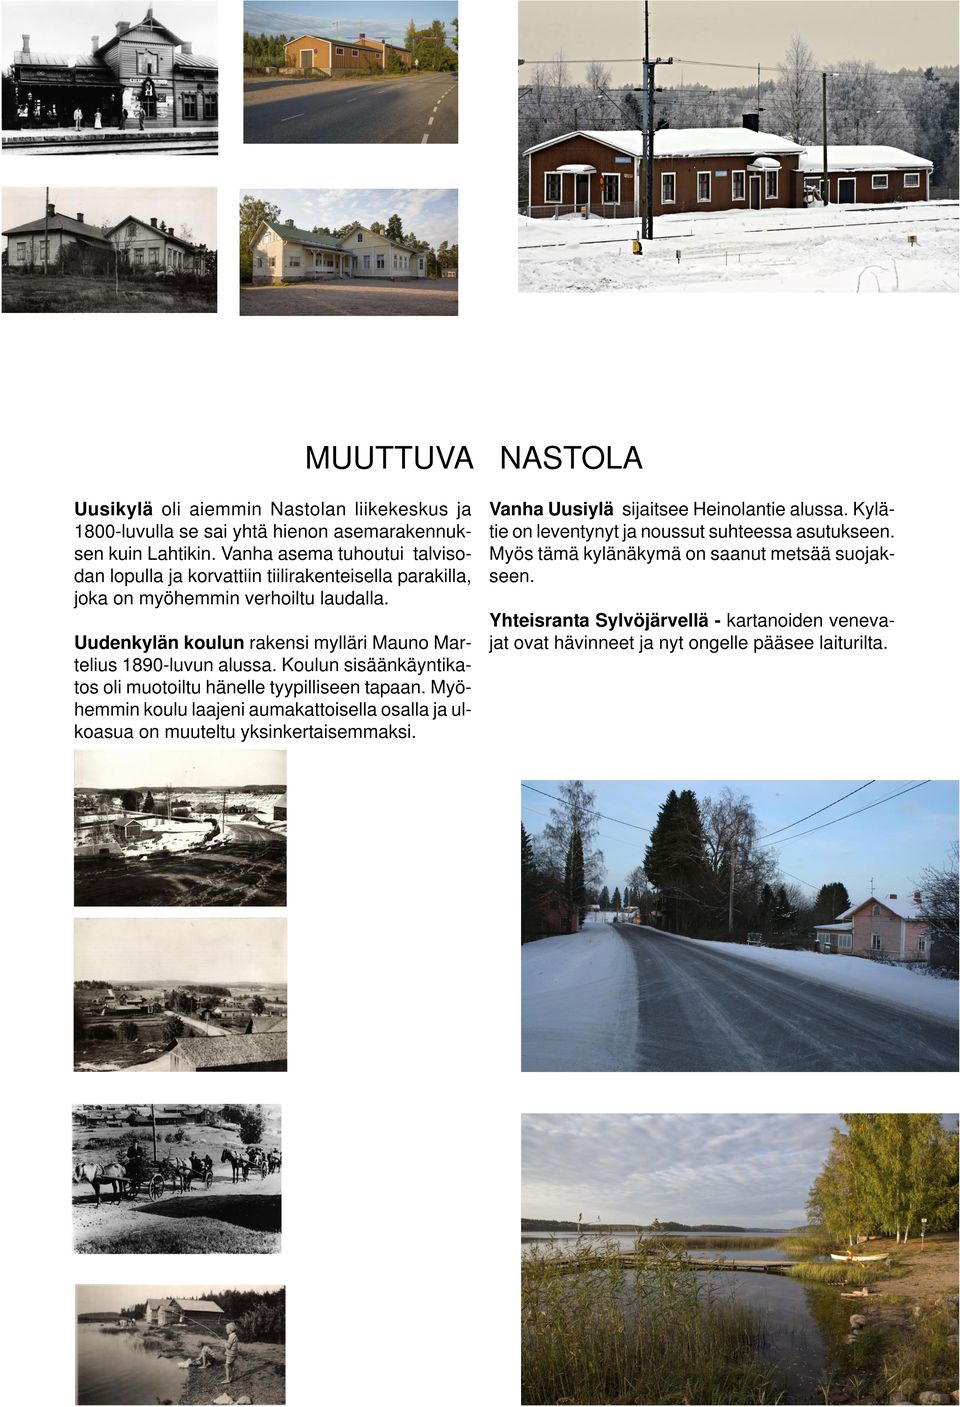 Uudenkylän koulun rakensi mylläri Mauno Martelius 1890-luvun alussa. Koulun sisäänkäyntikatos oli muotoiltu hänelle tyypilliseen tapaan.